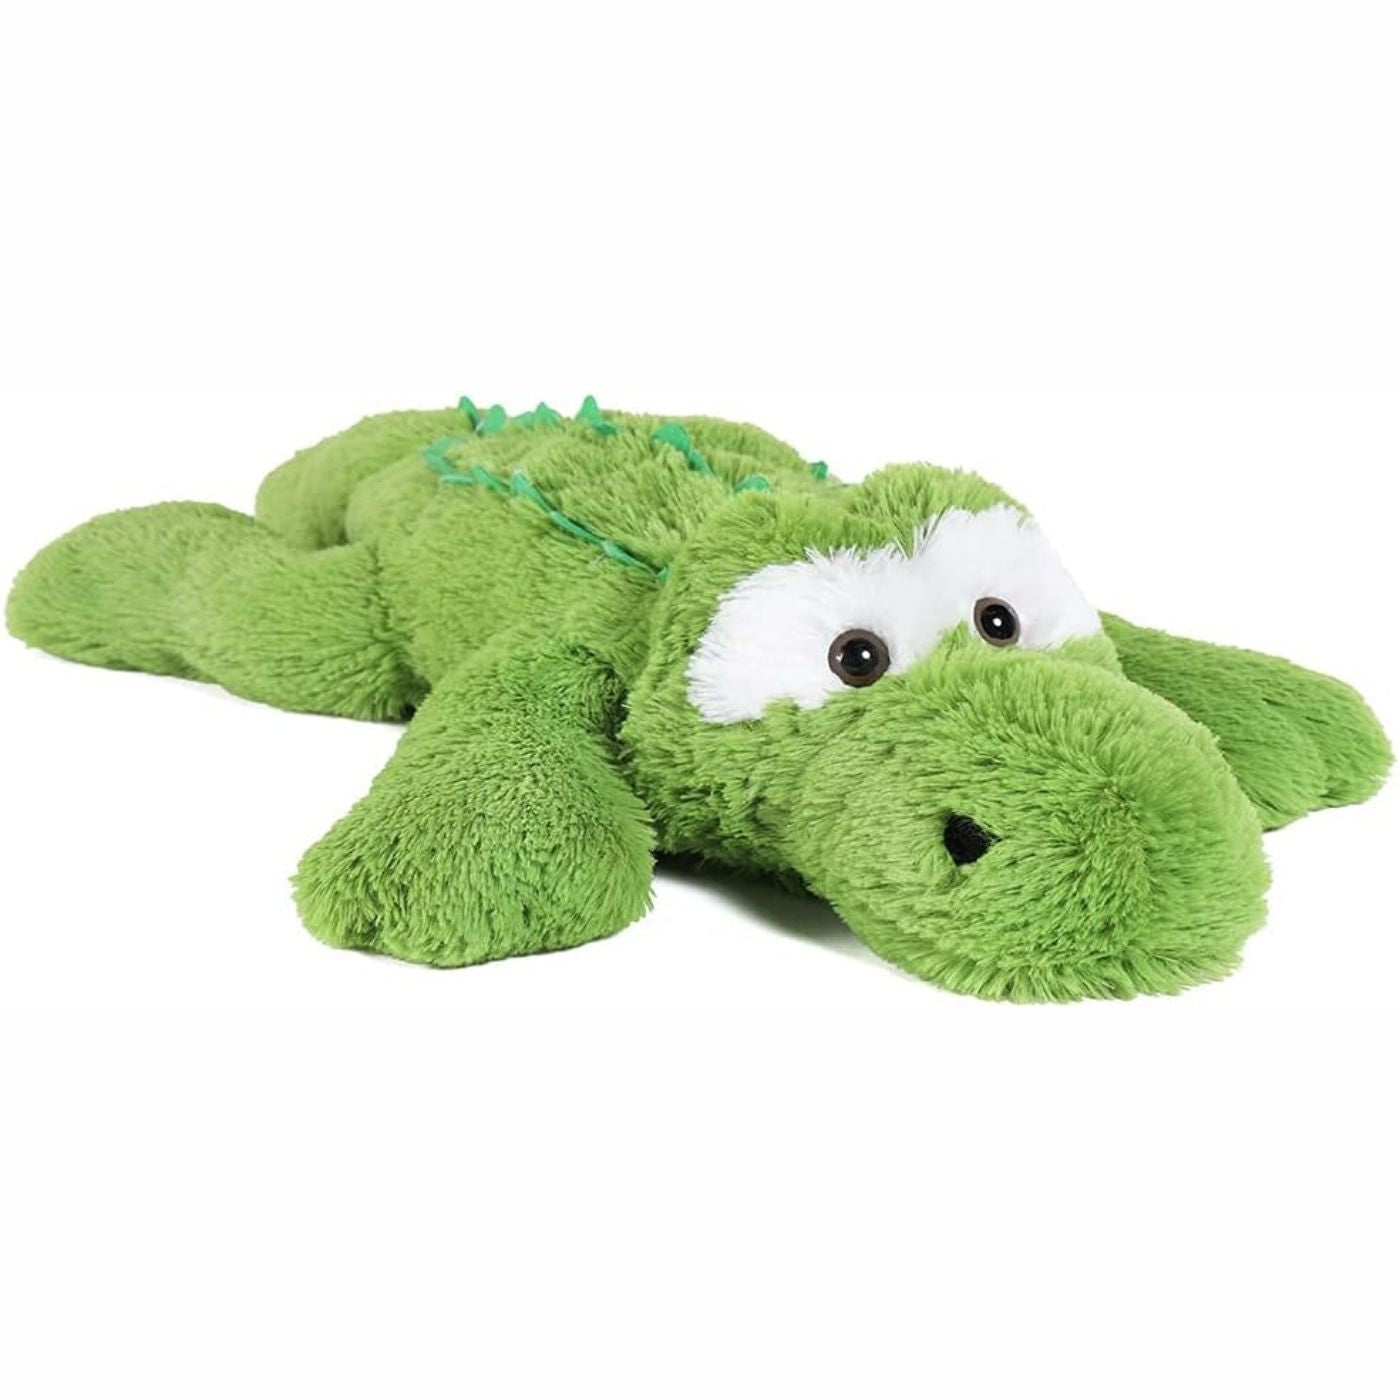 Alligator-Plüschtier, grün, 28 Zoll